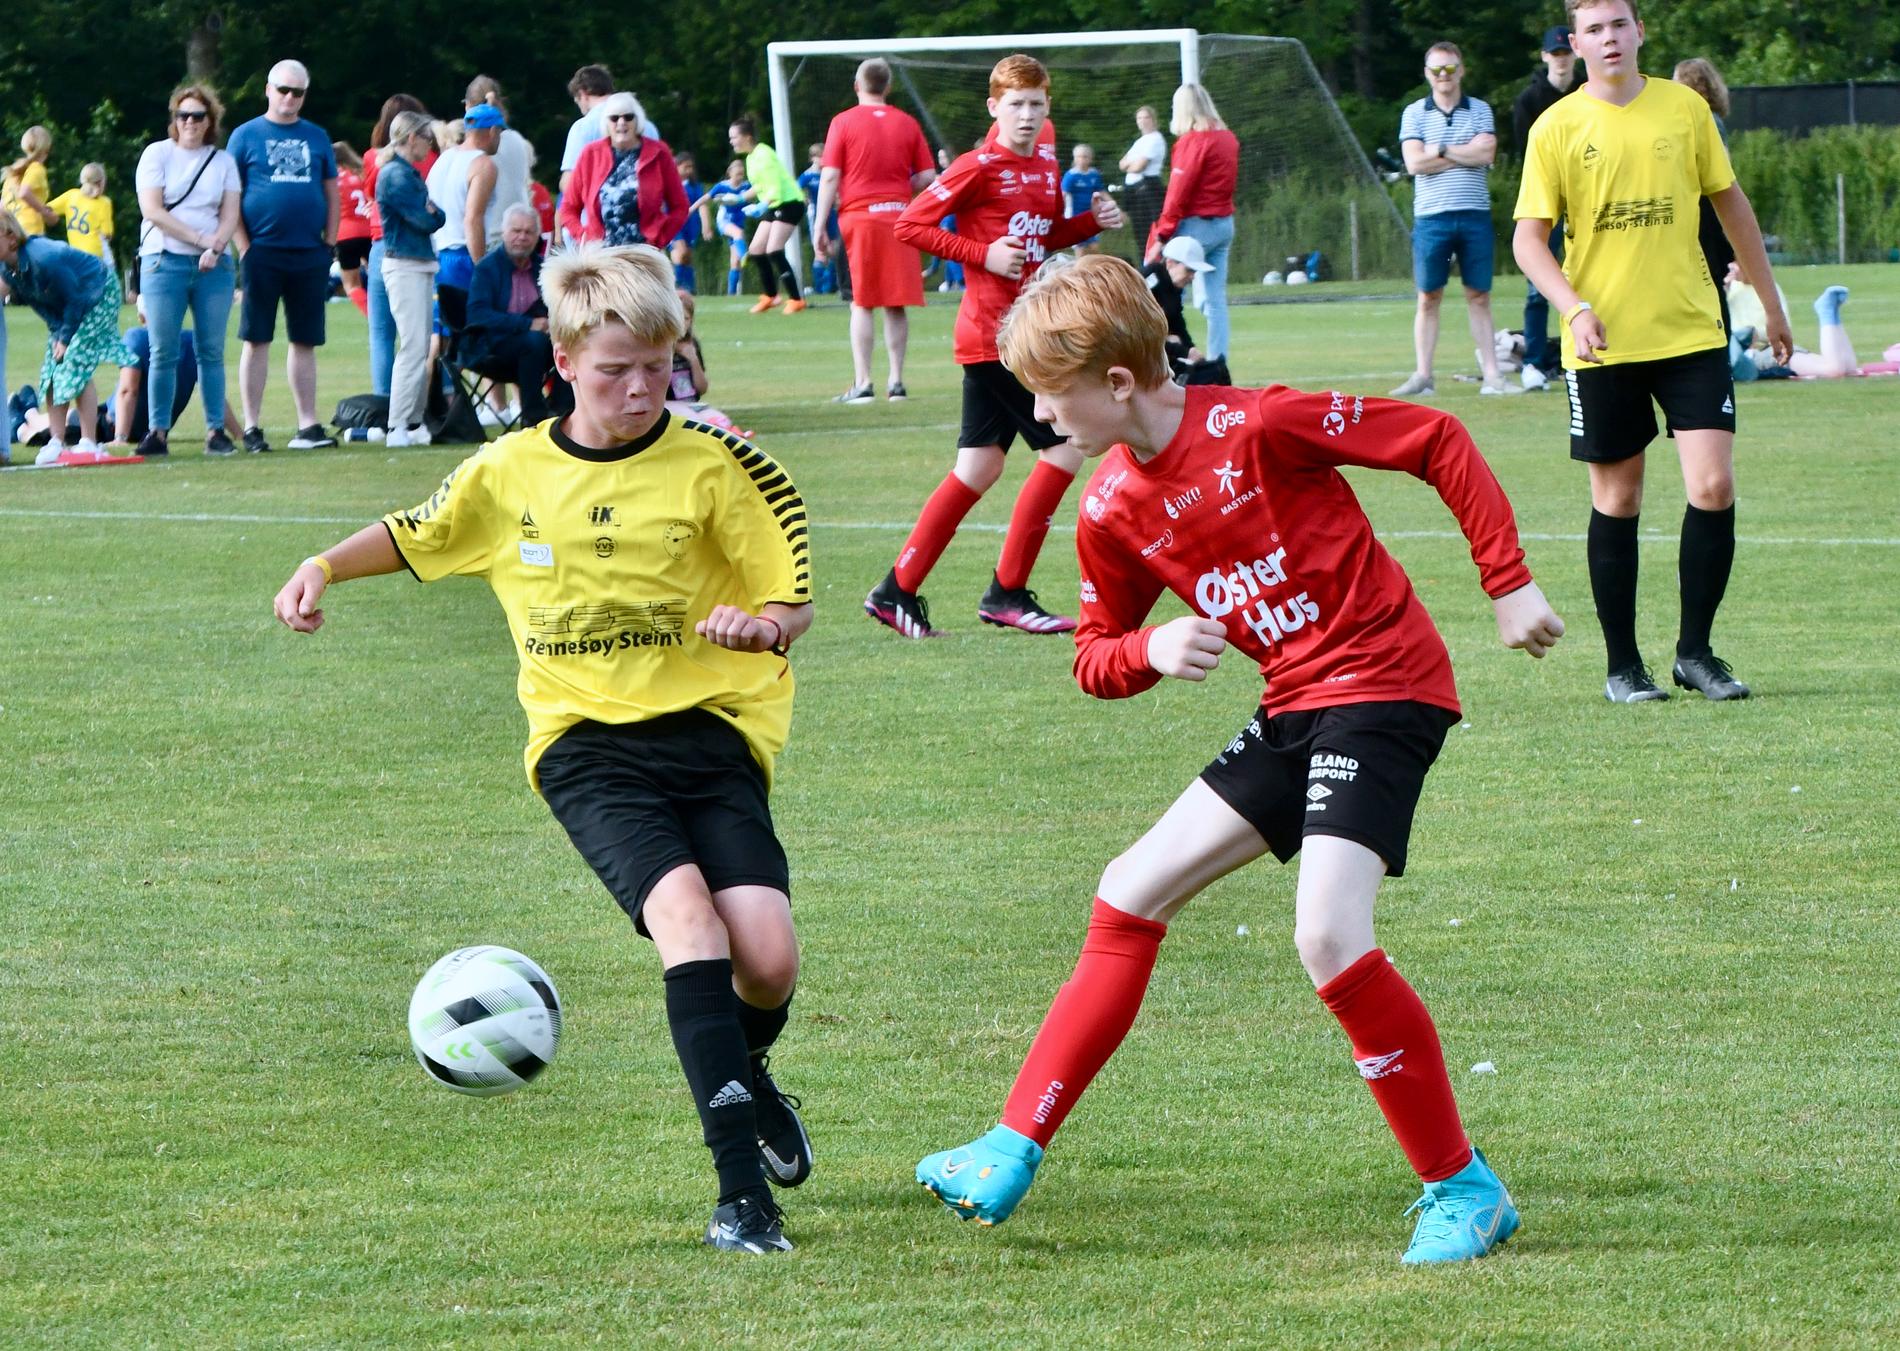 SPESILET: Rennesøy FK G13 og Mastra IL G13 møtte hverandre to ganger i løpet av Vildbjerg Cup. Her spiller de den første kampen. 